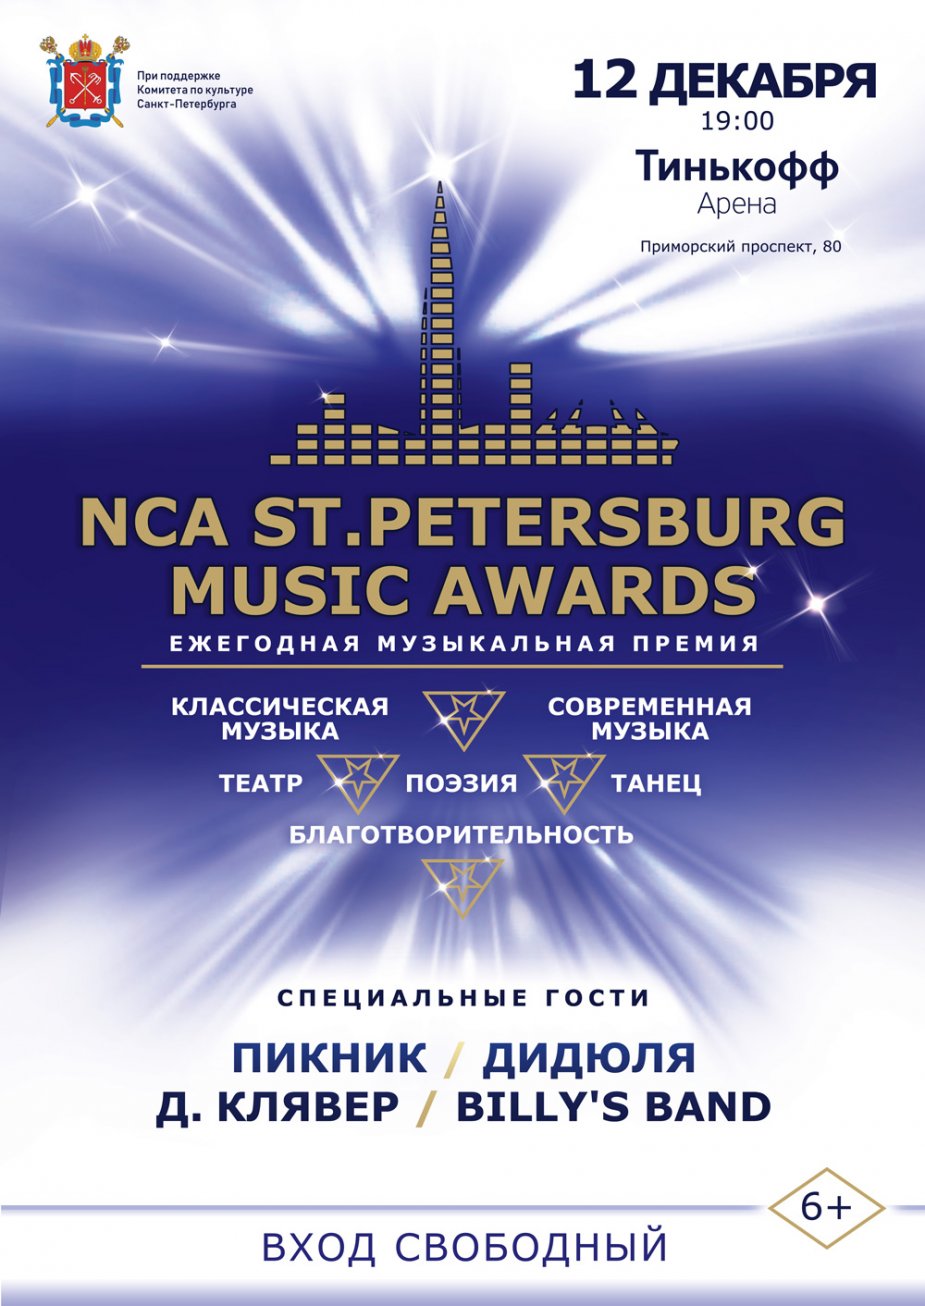 К списку музыкантов присоединятся Сурганова и Оркестр, Владимир Кузьмин.